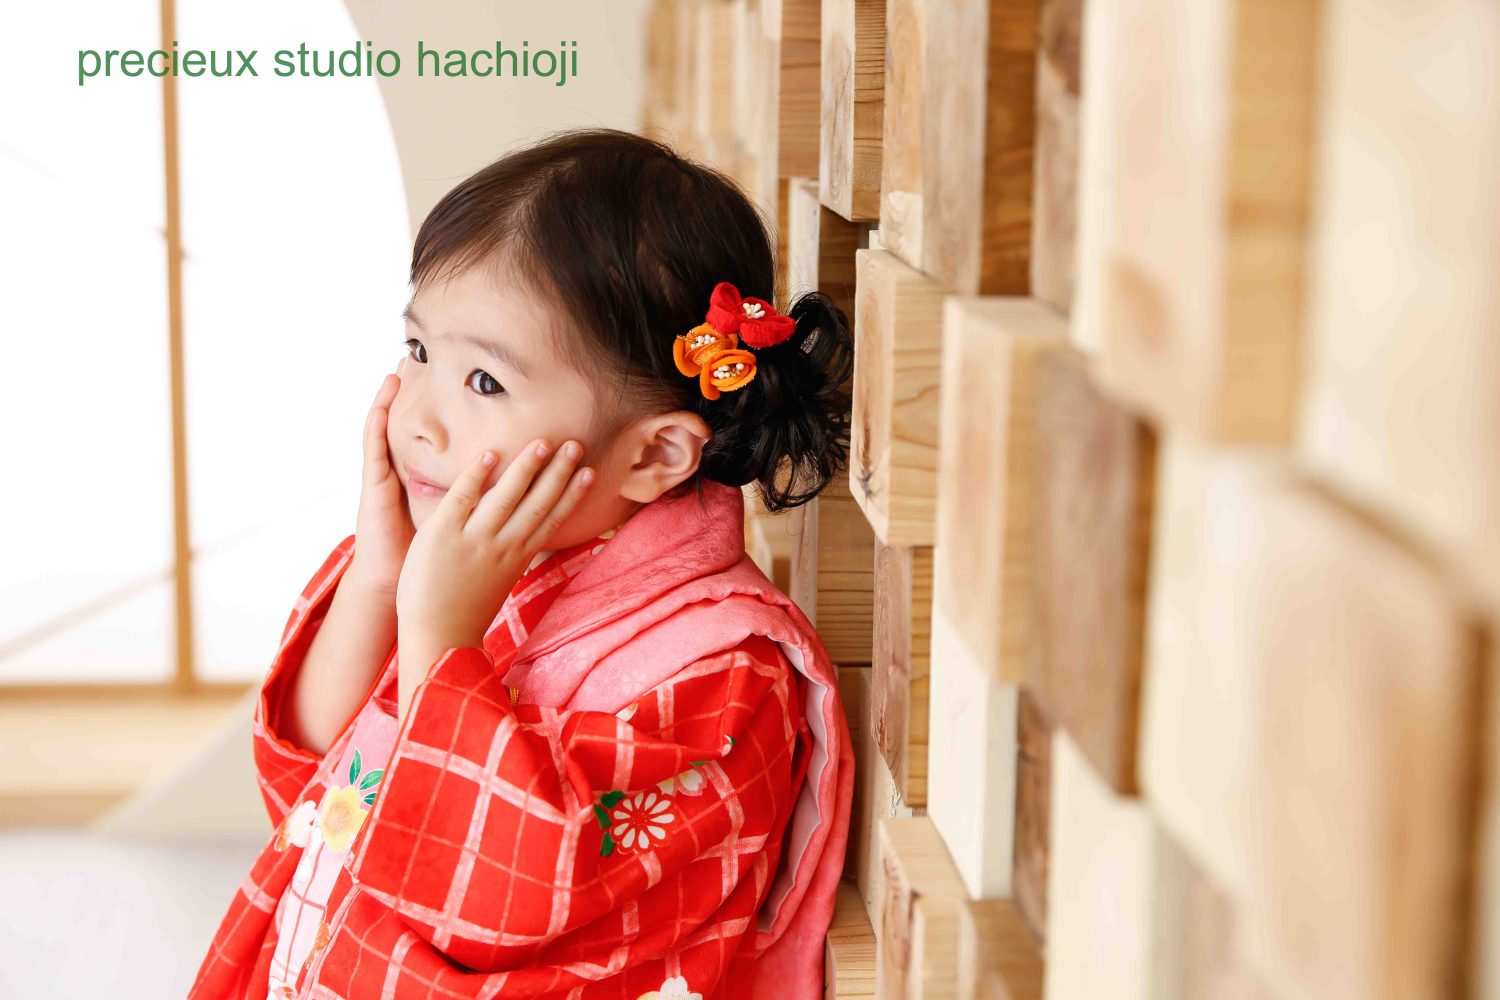 hachioji_12345-01